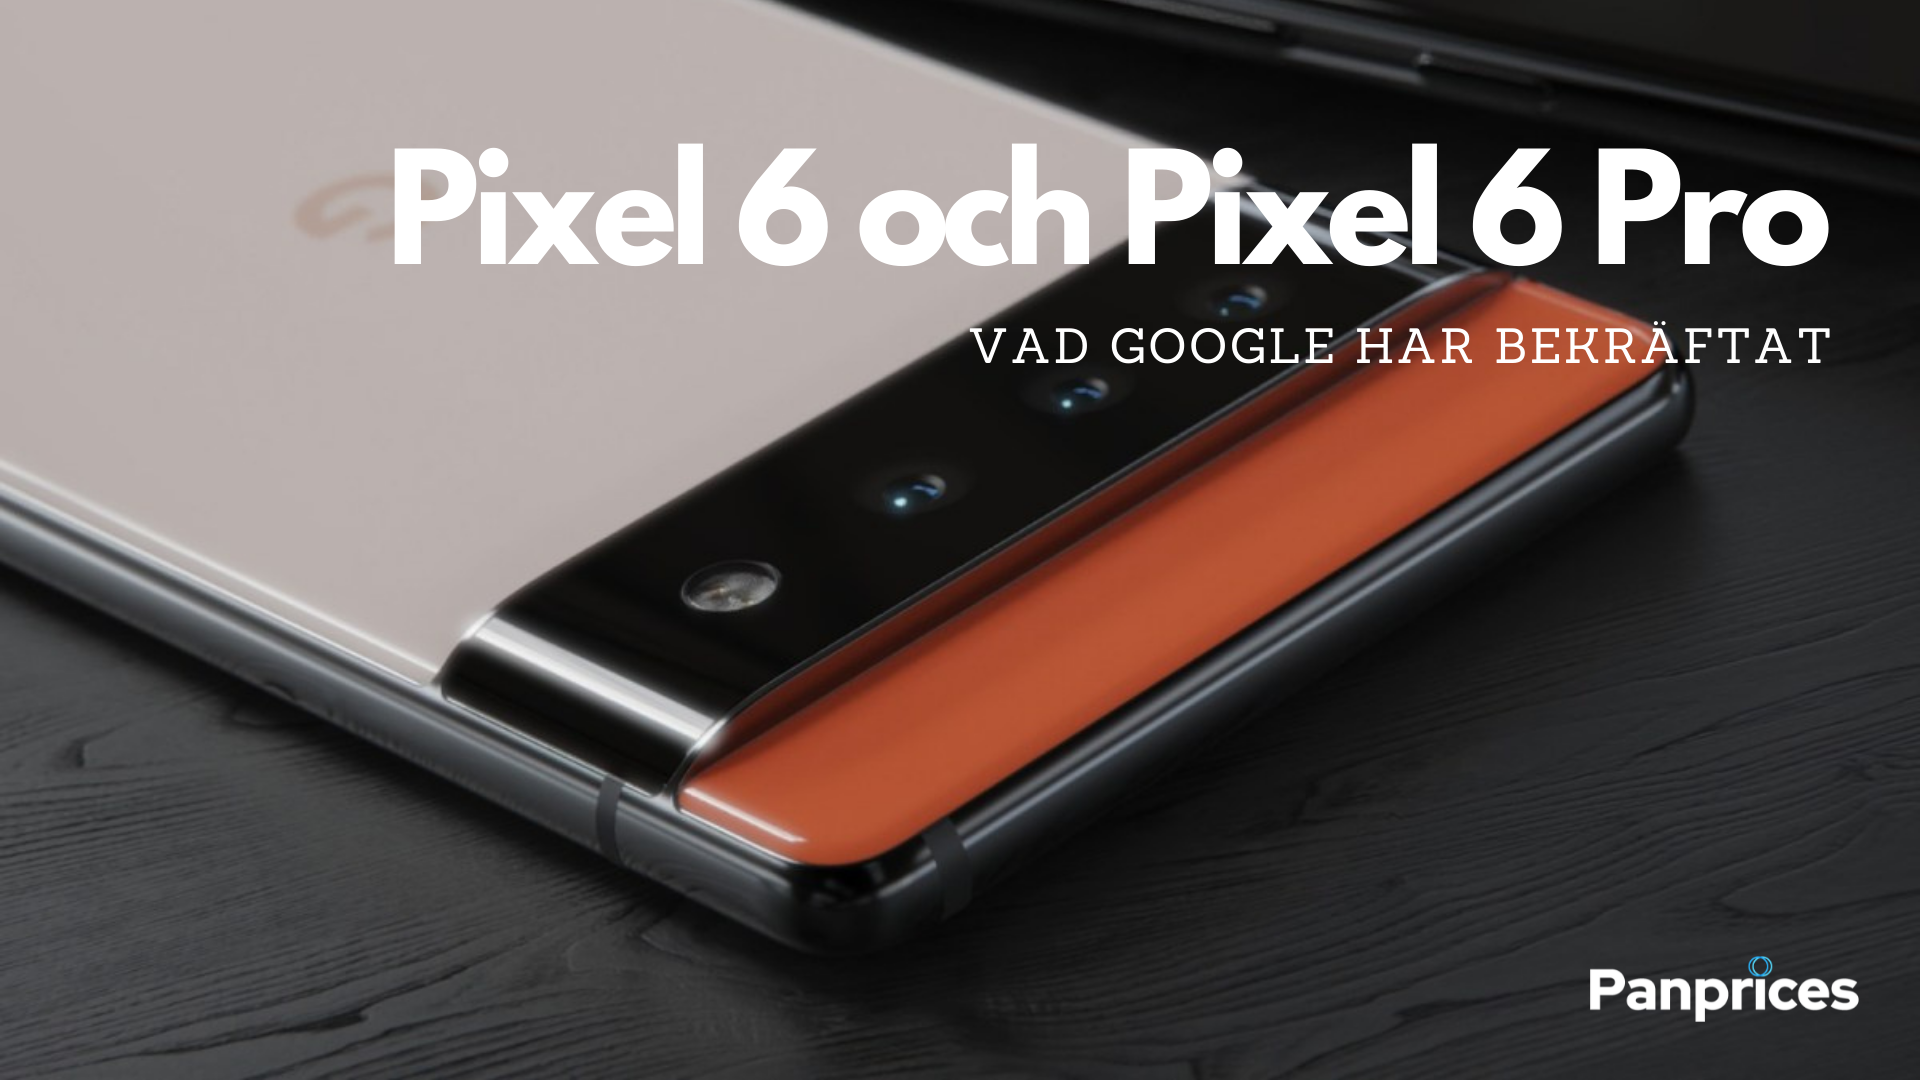 Google Pixel 6 och Pixel 6 Pro: Vad Google har bekräftat